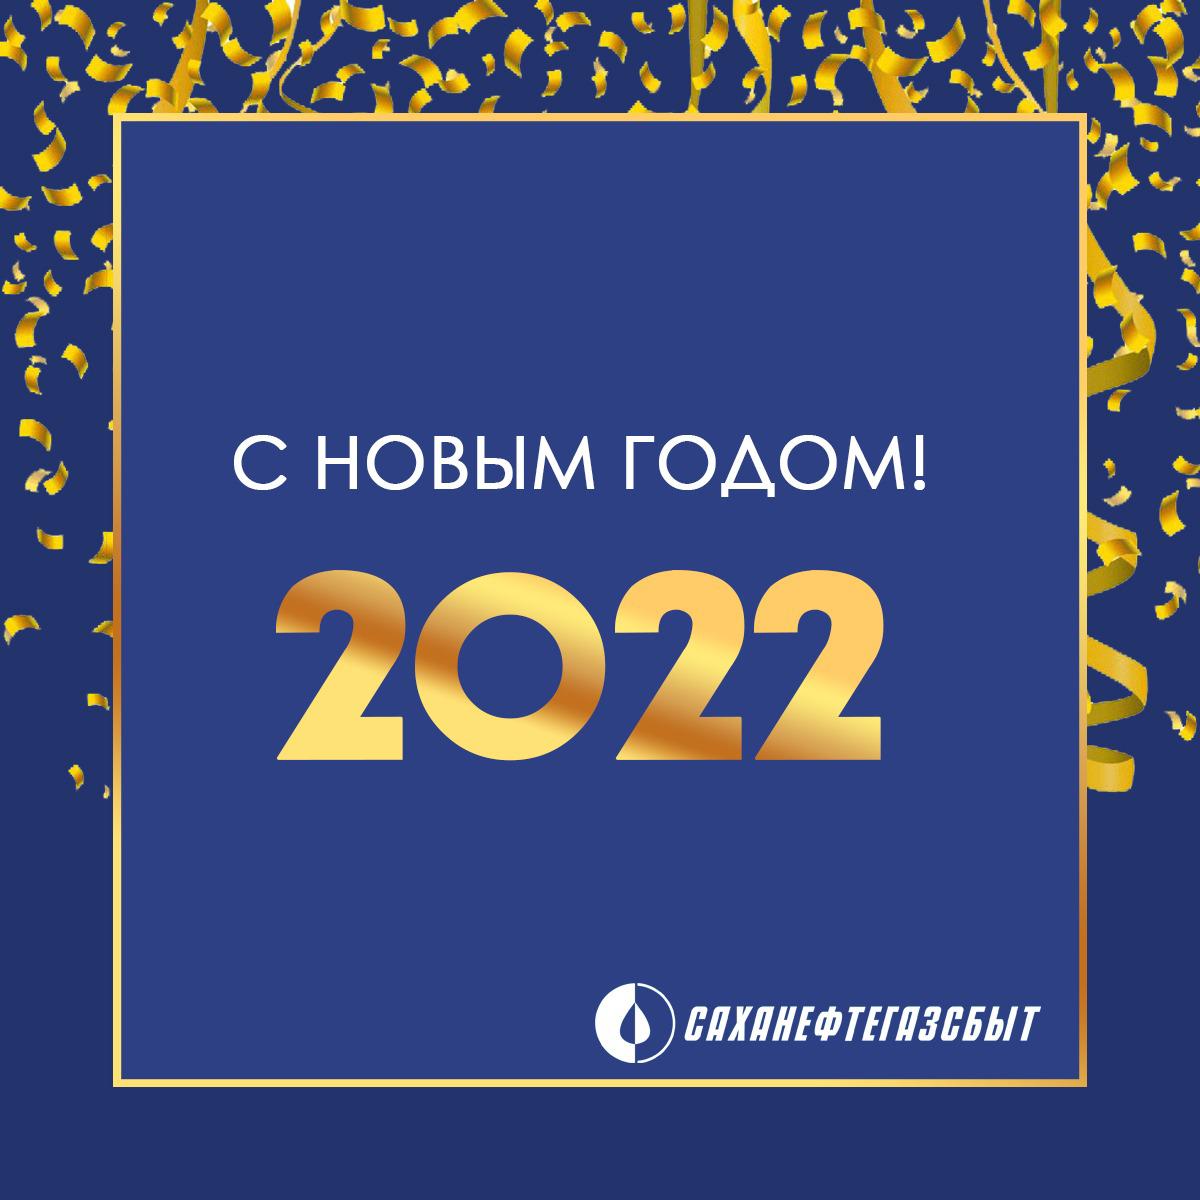 АО «Саханефтегазсбыт» поздравляет с Новым годом!